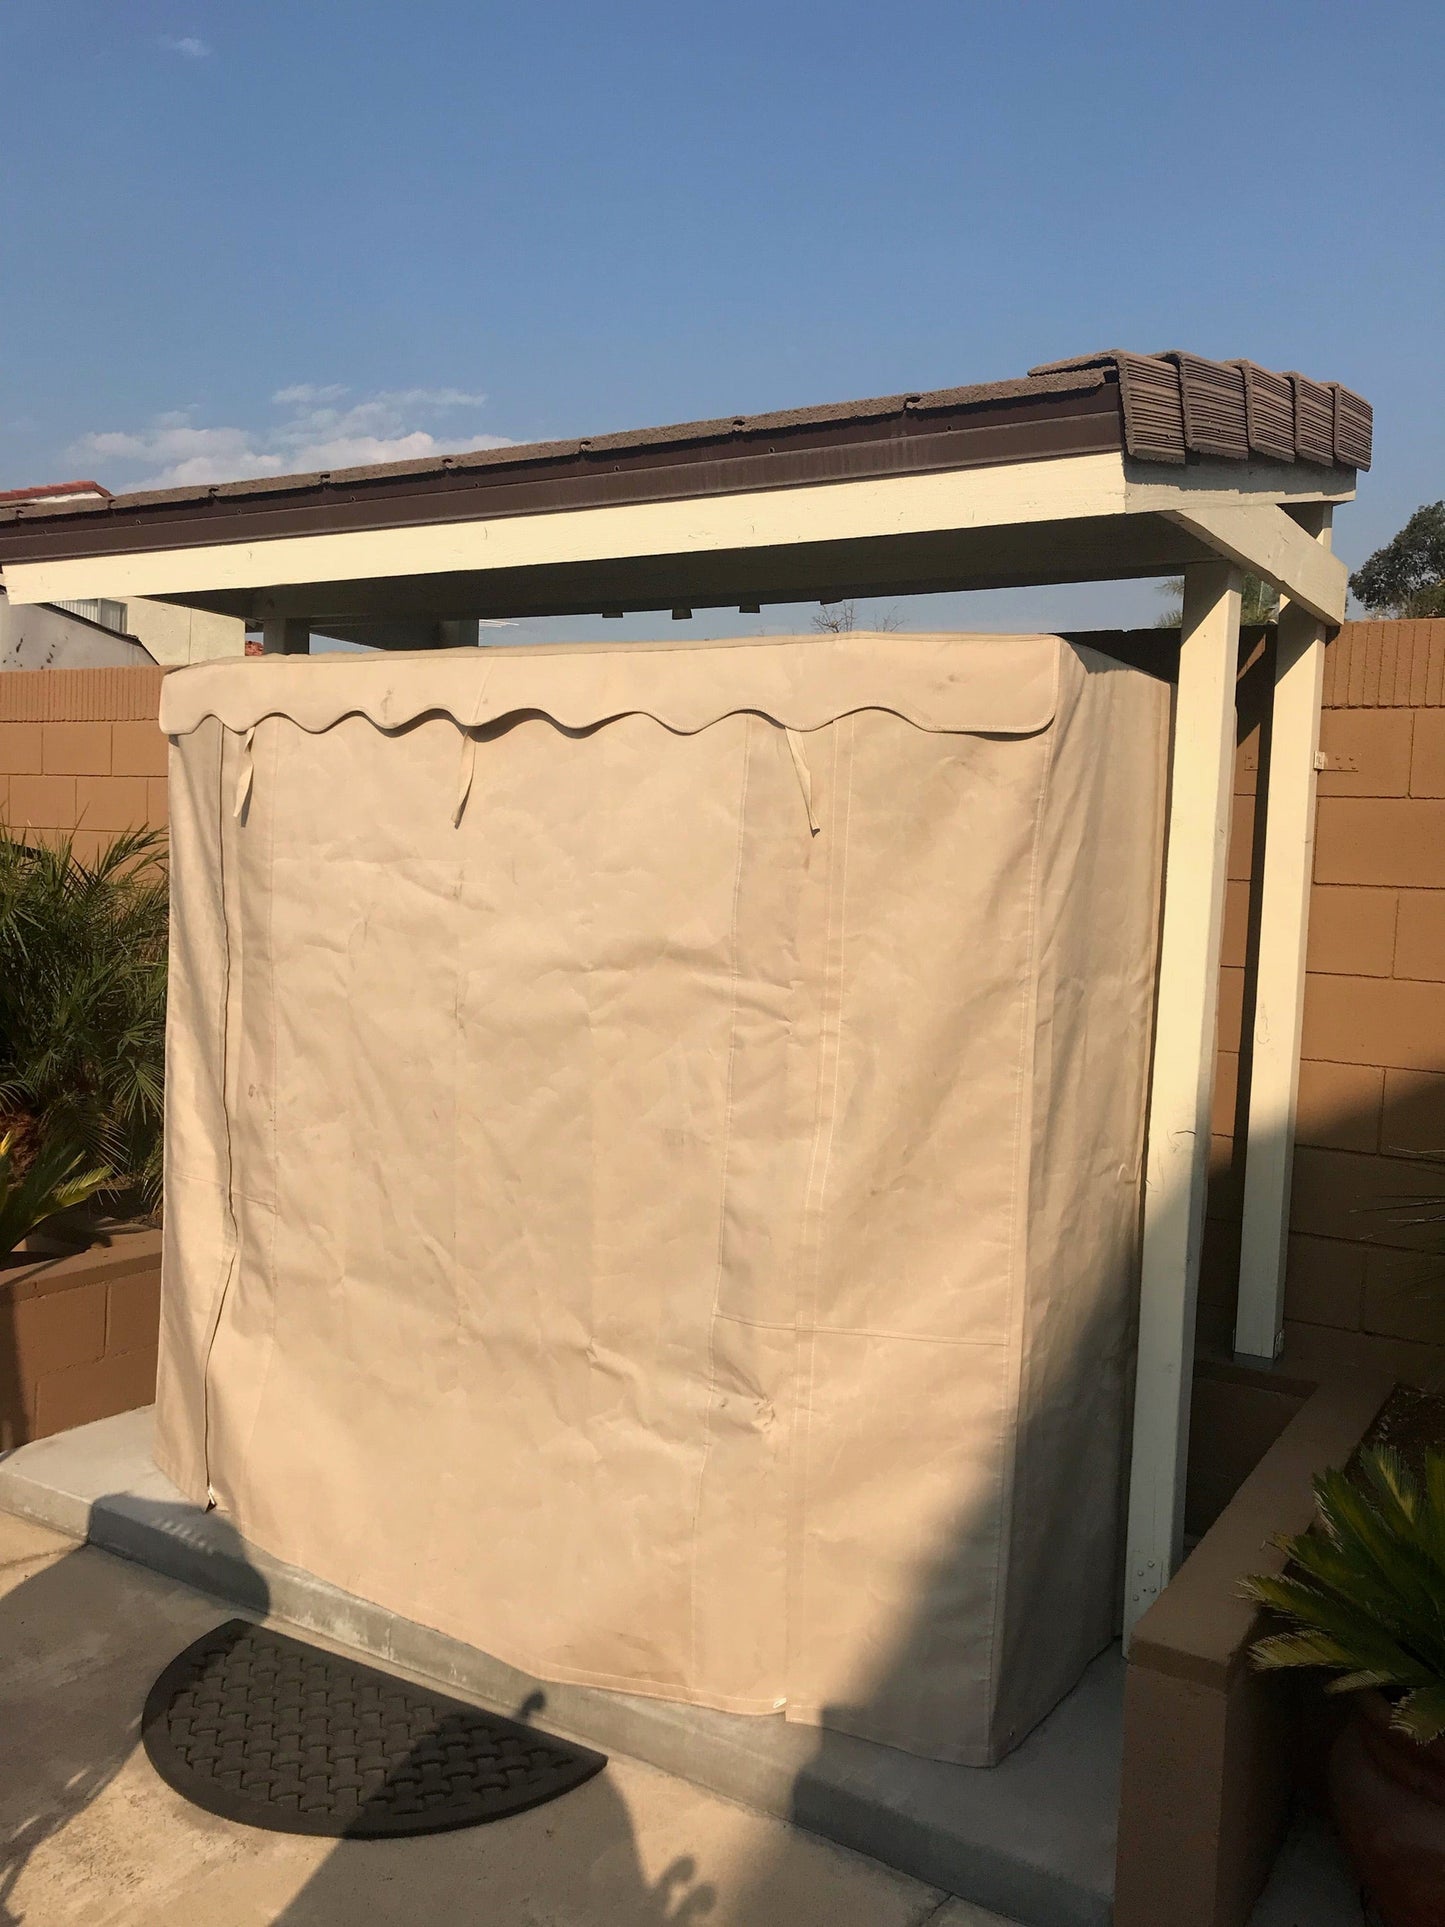 Rain Covers for Outdoor Enlighten Sauna ( Sunbrella material, waterproof)